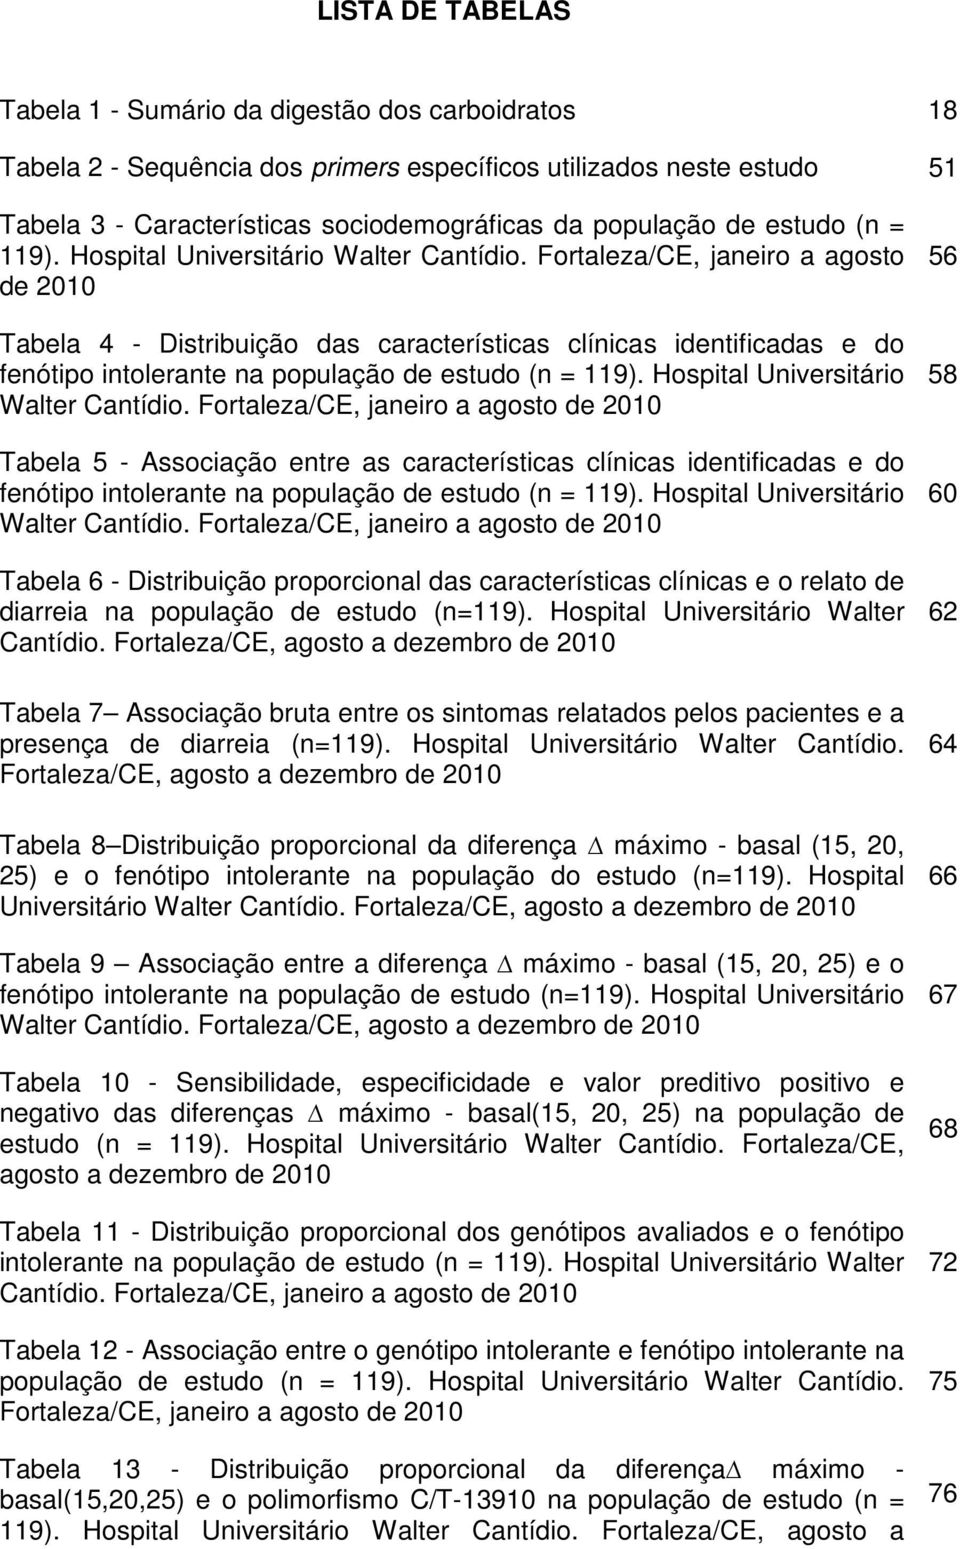 Fortaleza/CE, janeiro a agosto de 2010 Tabela 4 - Distribuição das características clínicas identificadas e do fenótipo intolerante na população  Fortaleza/CE, janeiro a agosto de 2010 Tabela 5 -